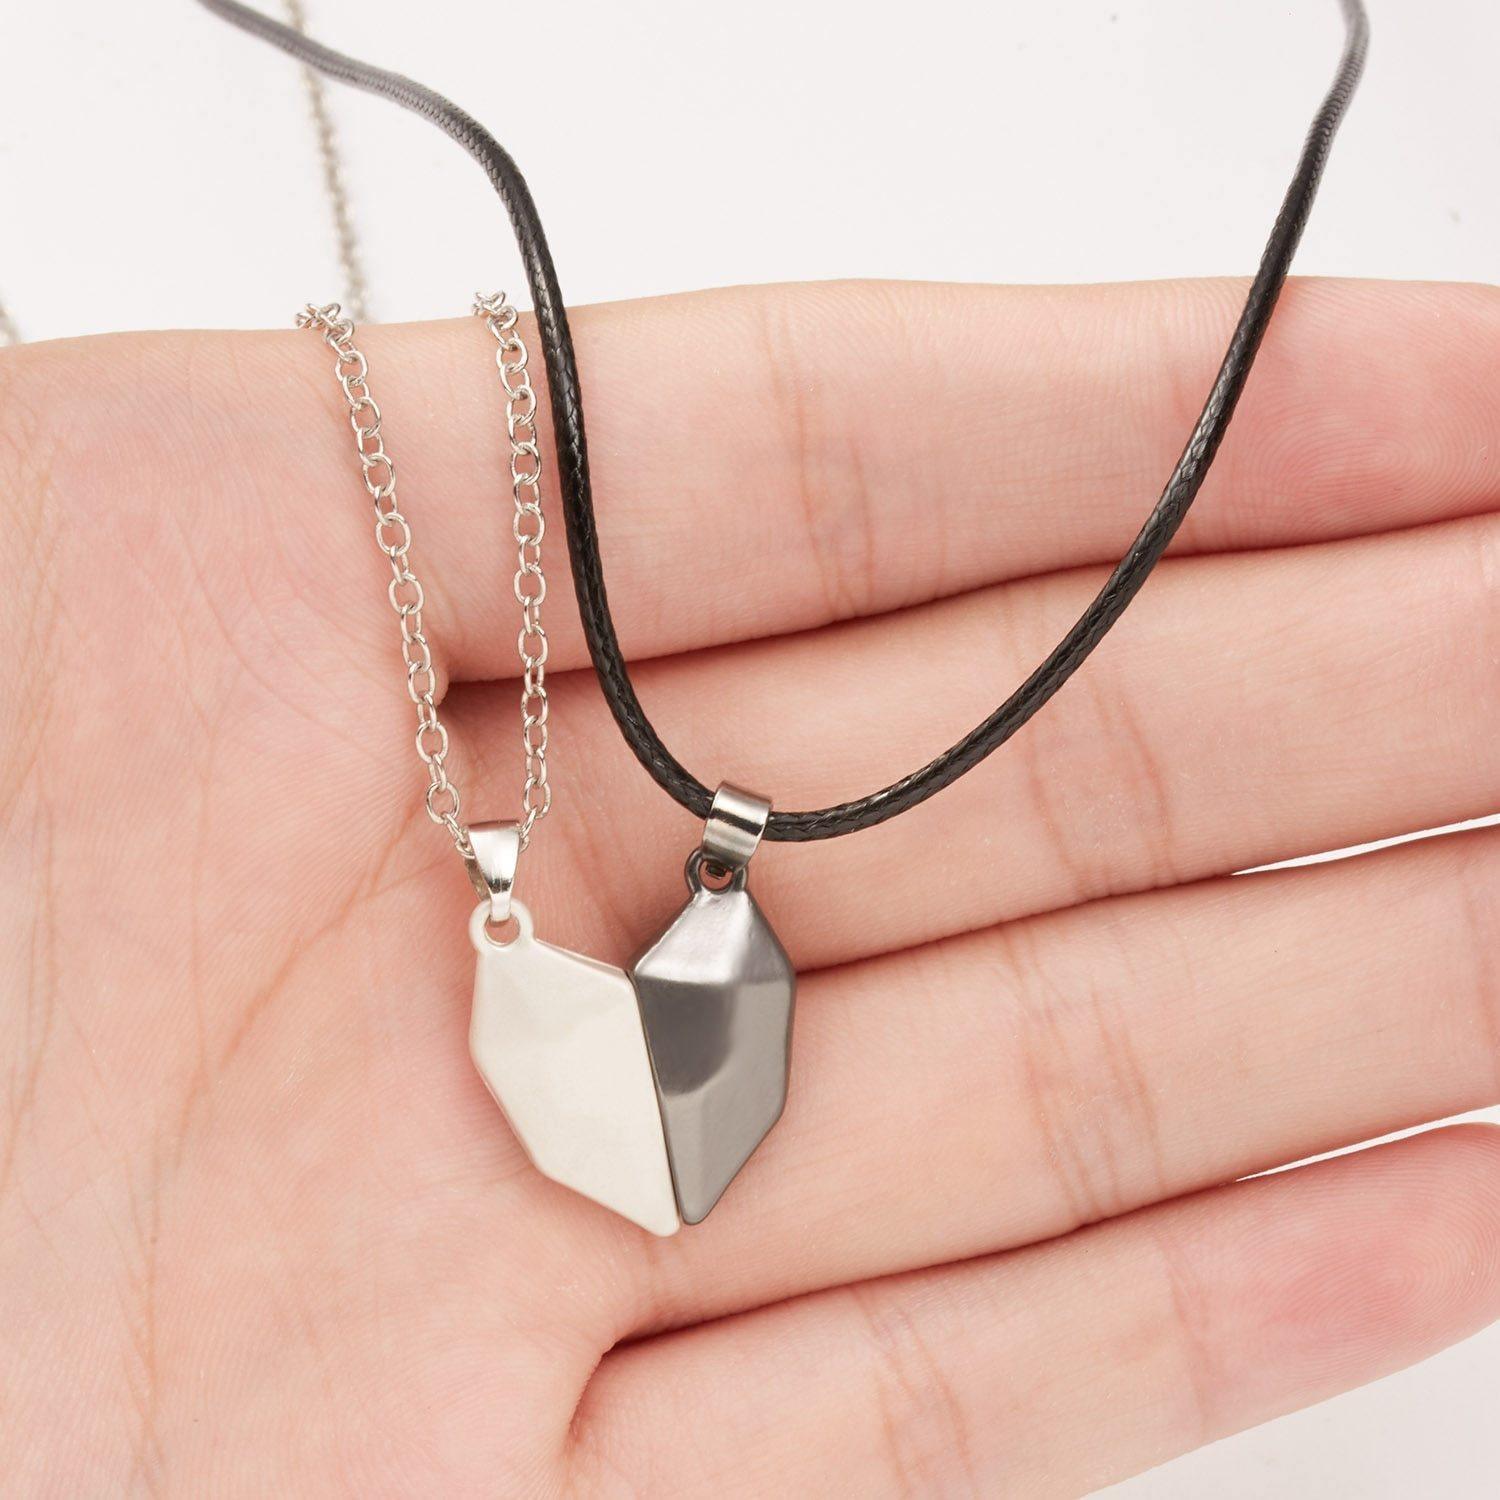 Magnetic Necklace 2 Pcs / Set Heart Shaped Best Friends Necklaces Gift G2P8  - Walmart.com